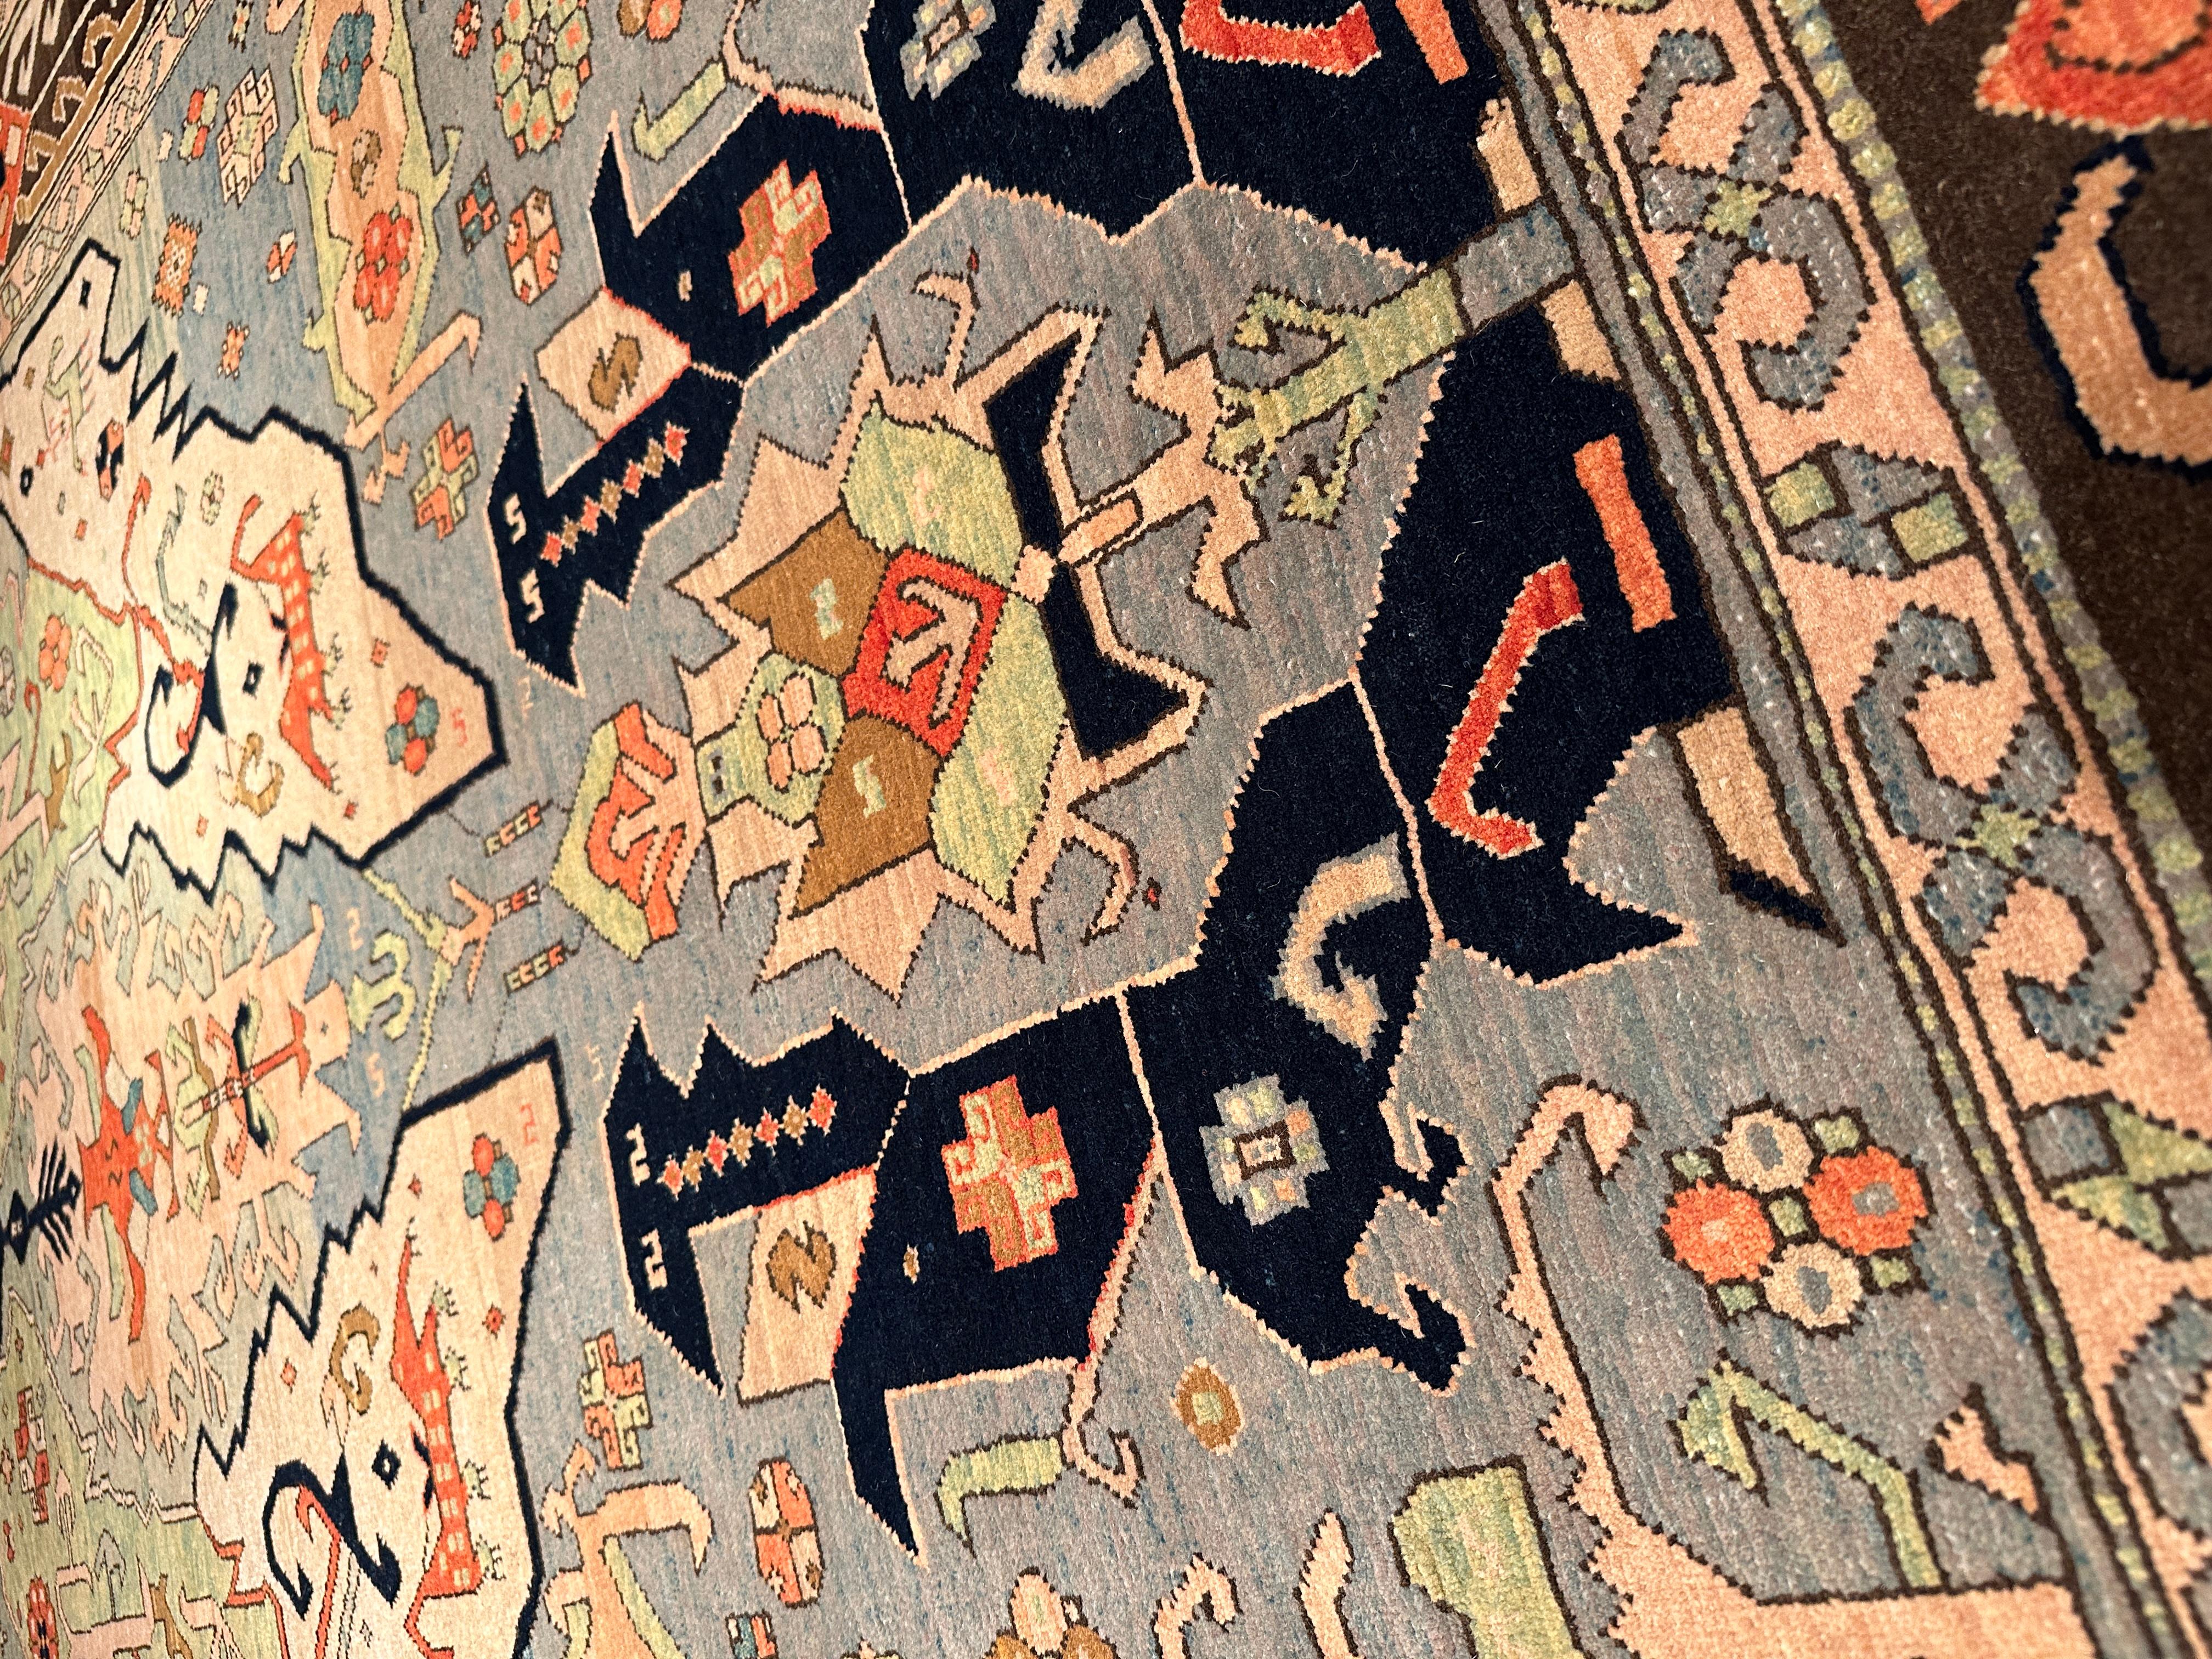 Le symbolisme du dragon et sa représentation dans les tapis tissés ont longtemps exercé une certaine fascination. Le motif des tapis 